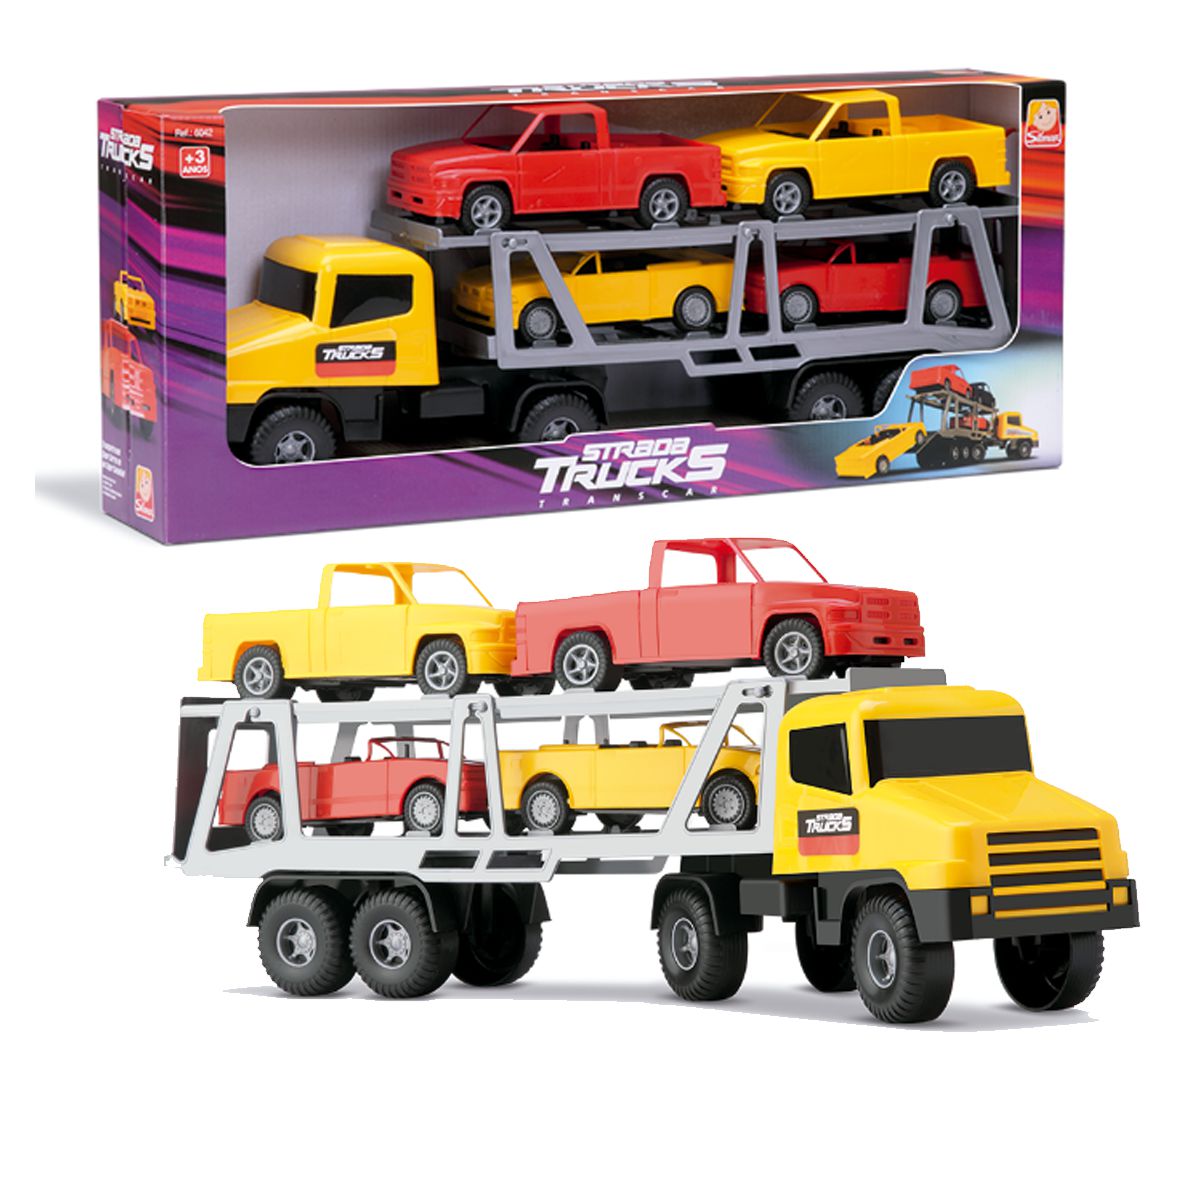 Caminhão Brinquedo Infantil Cegonha Miniatura + 2 Carrinhos